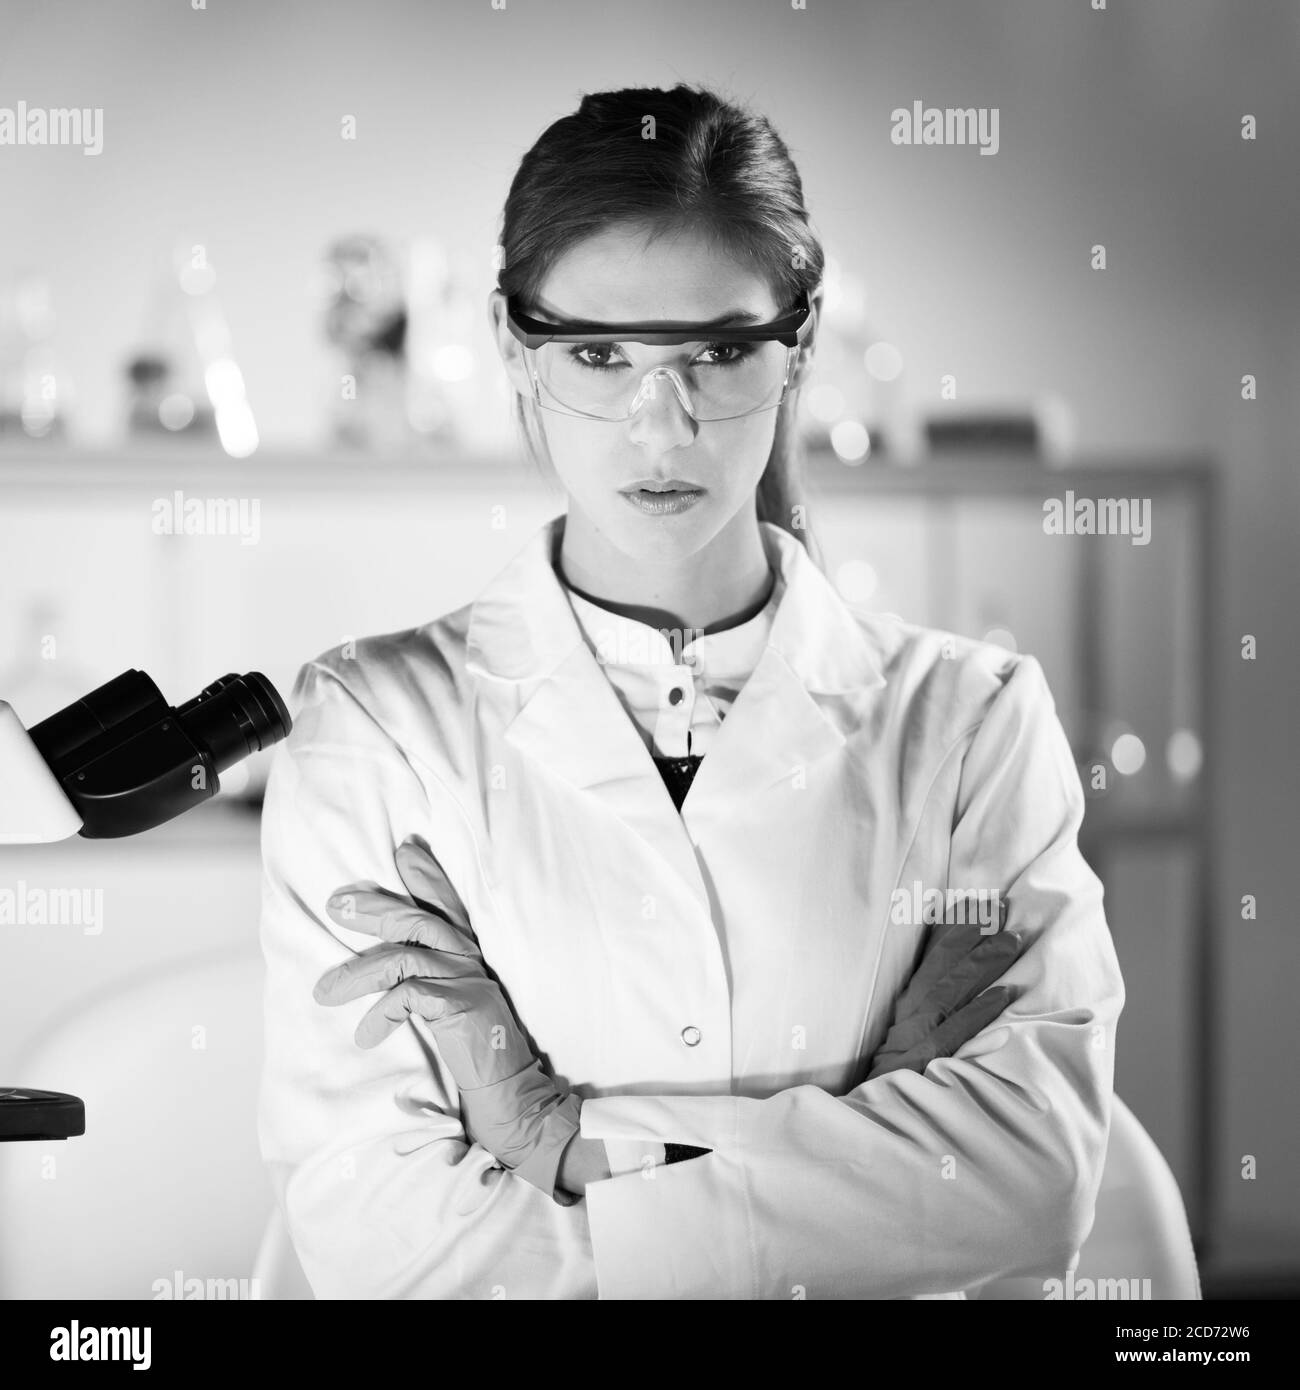 Porträt einer attraktiven, jungen, selbstbewussten weiblichen Gesundheitsfachkraft in ihrem Arbeitsumfeld. Schwarzweiß-Bild Stockfoto